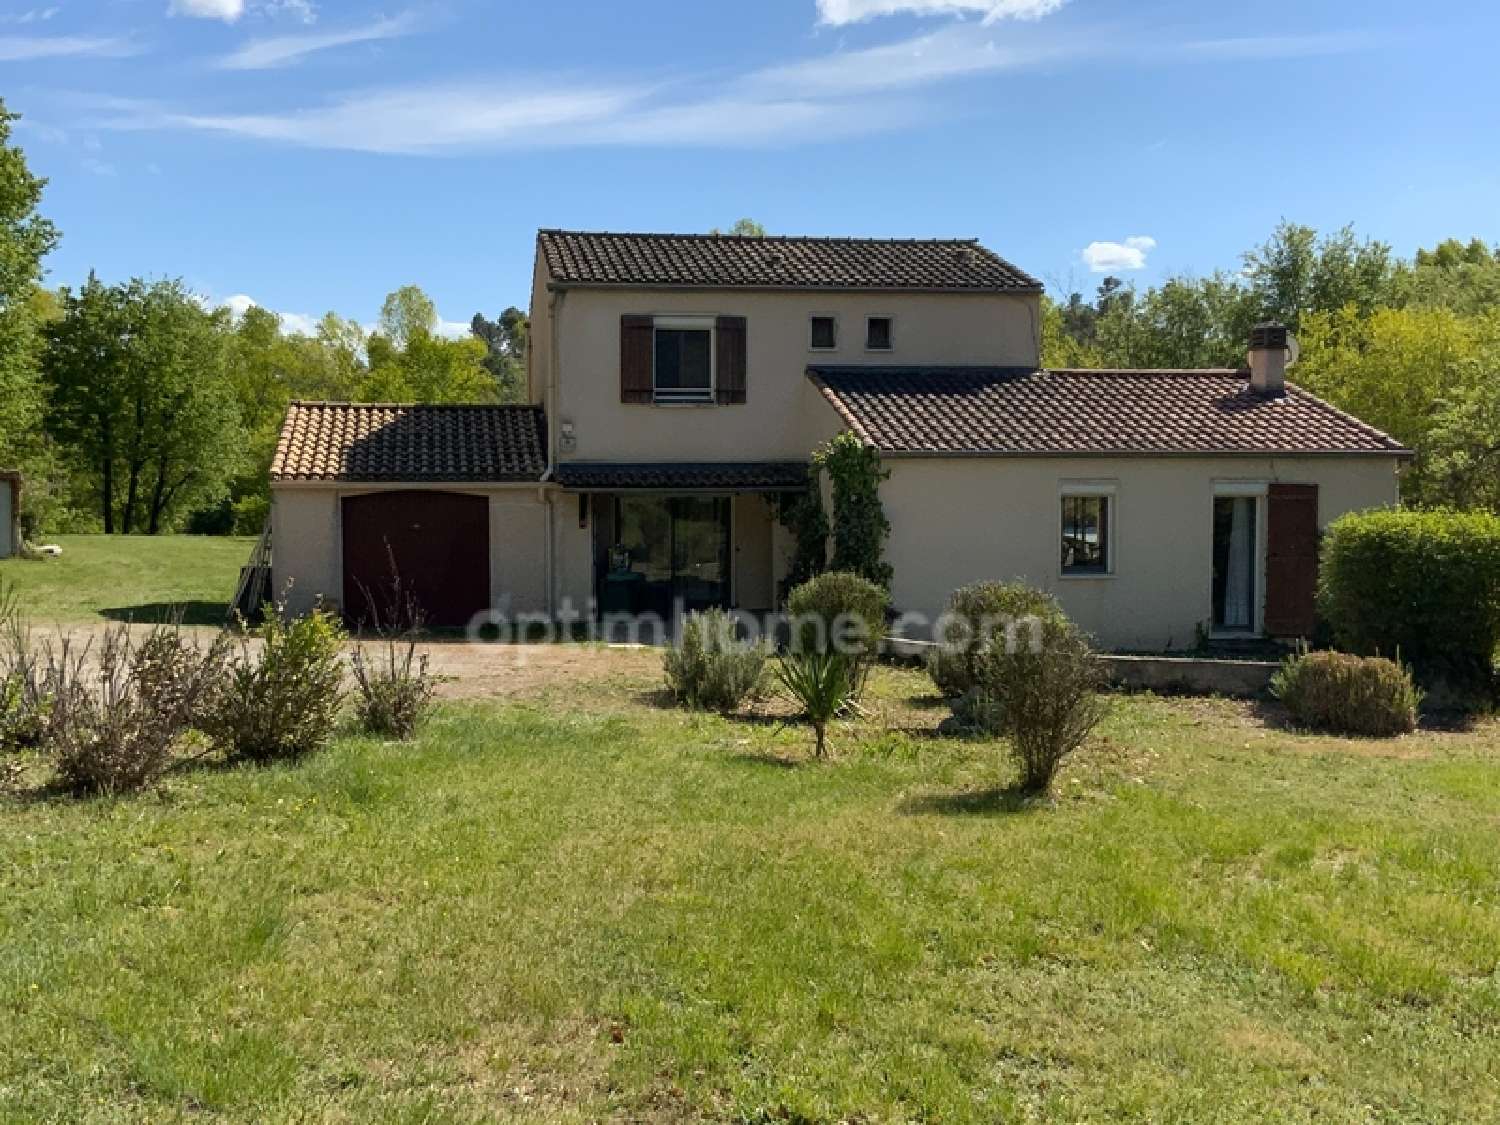  à vendre maison Pierrevert Alpes-de-Haute-Provence 2